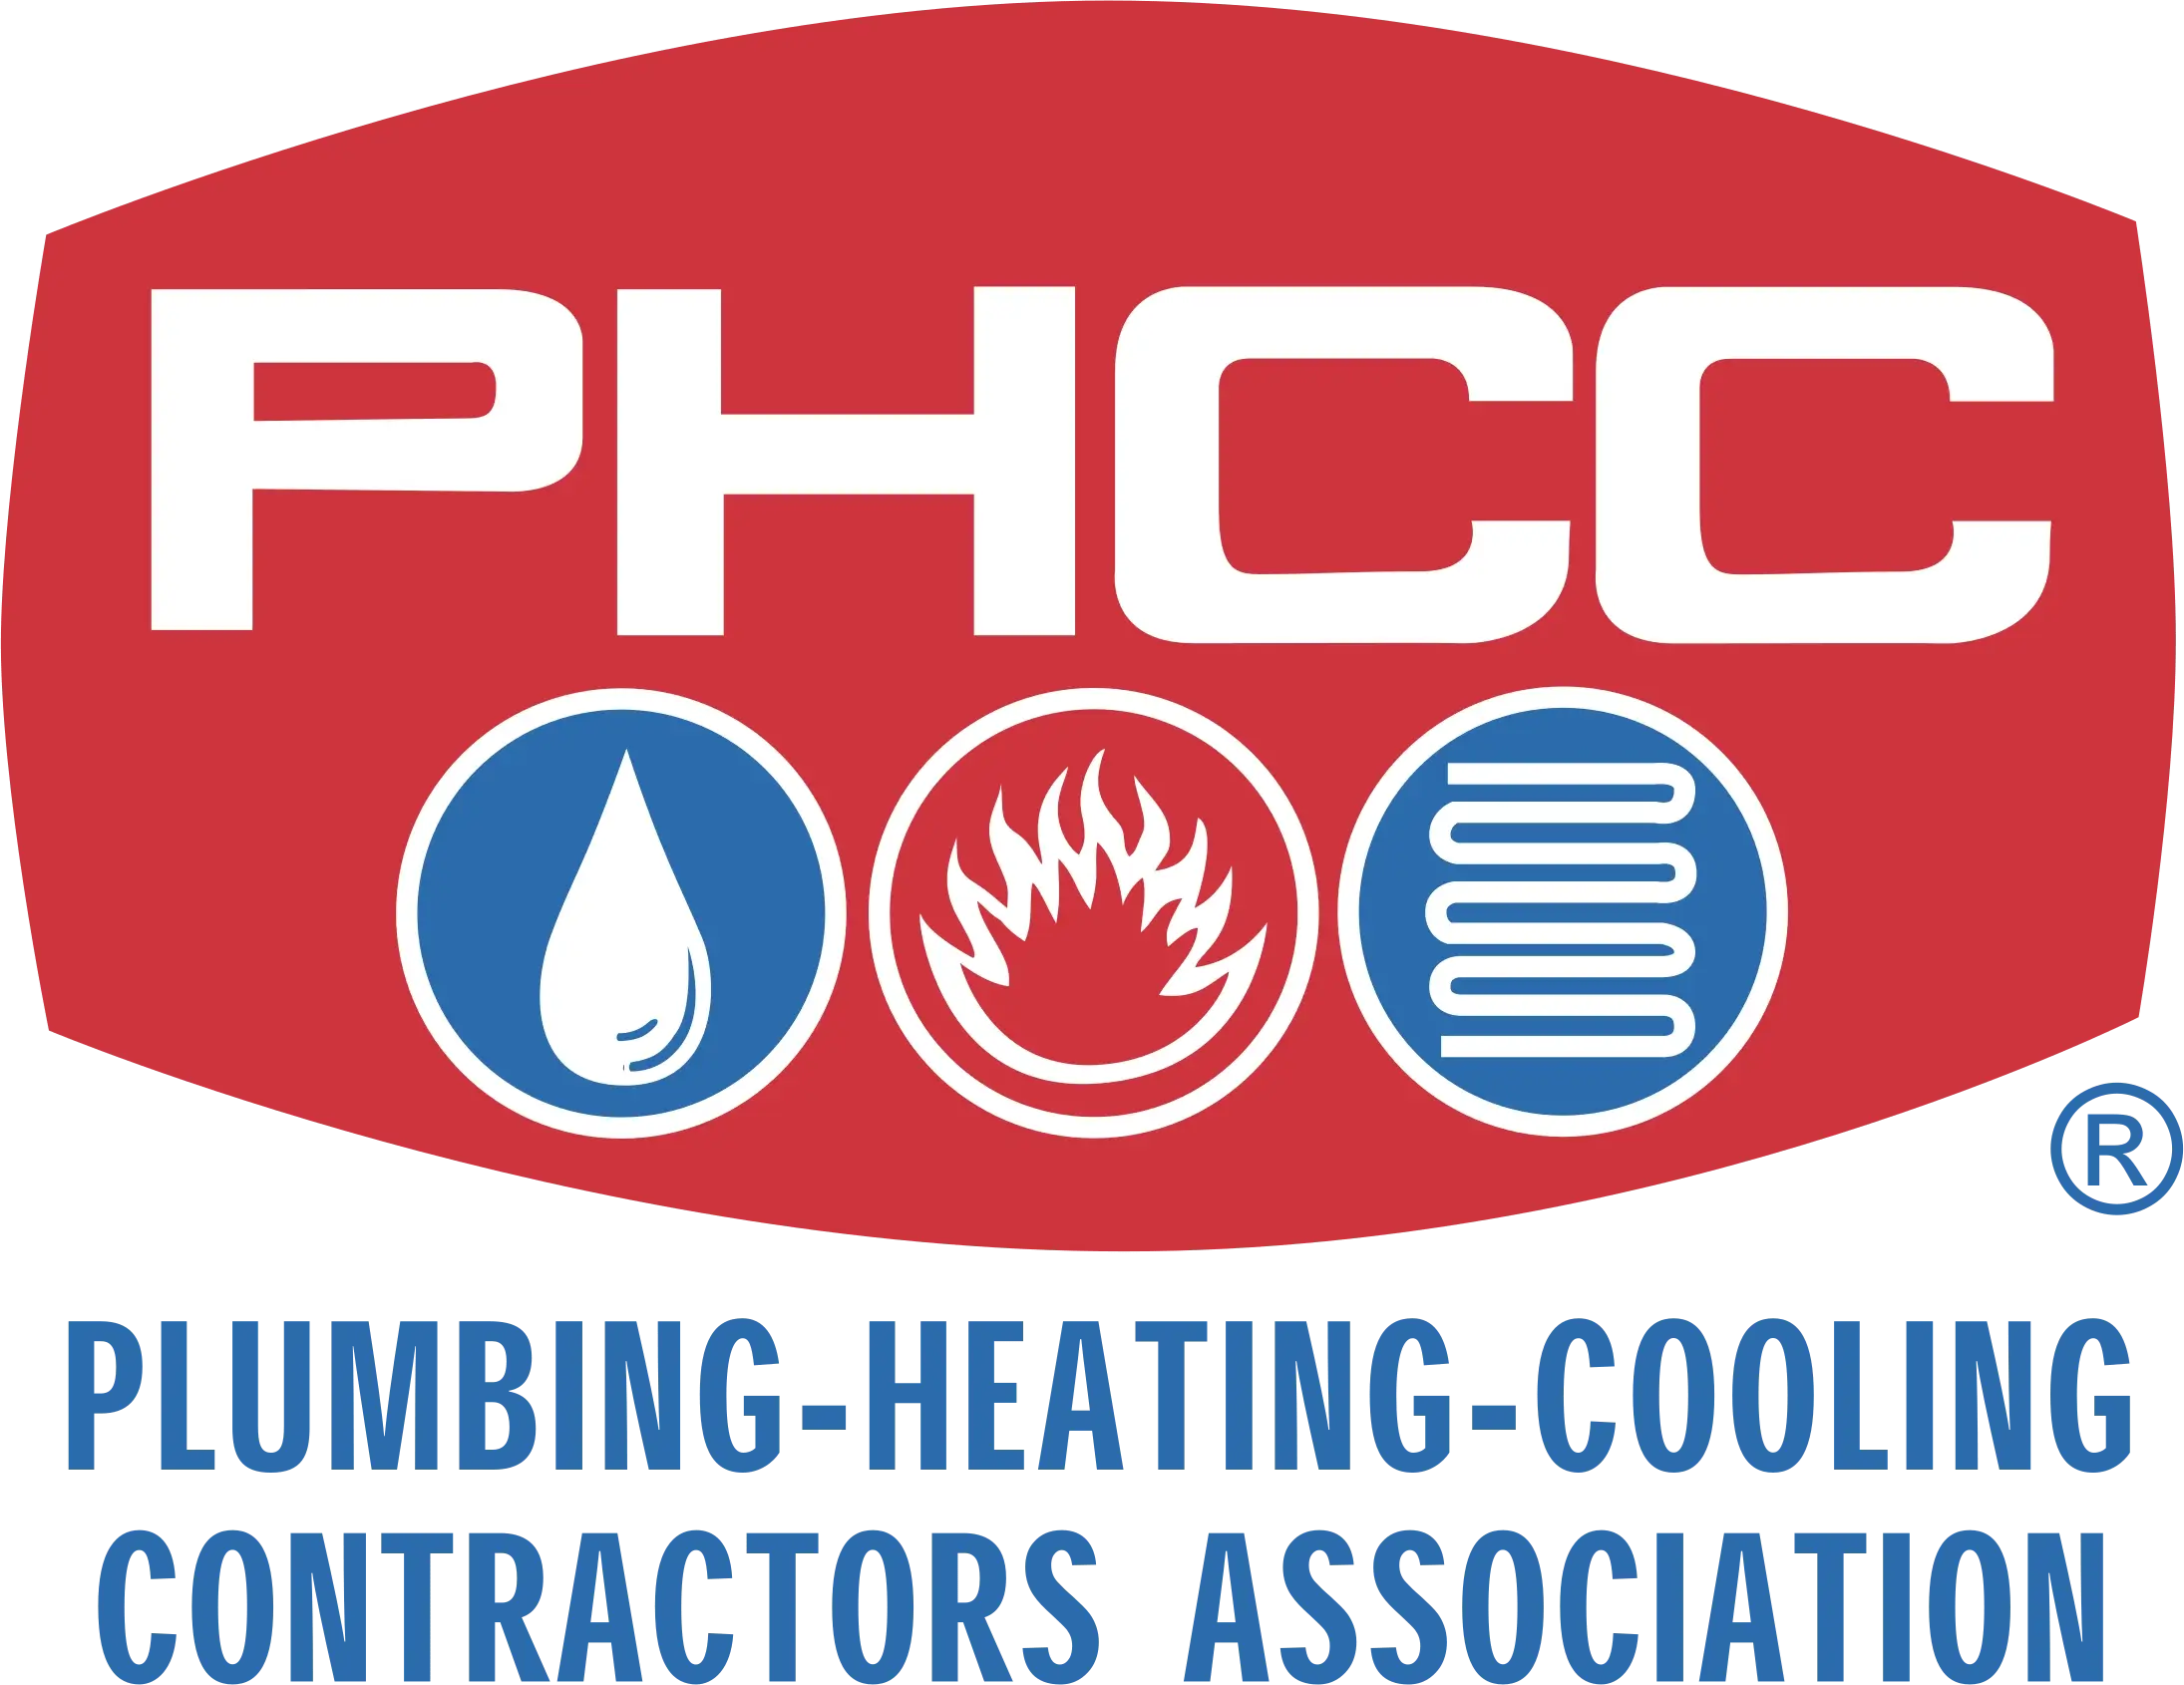 Plumbing, Heating, Cooling Contractors Association